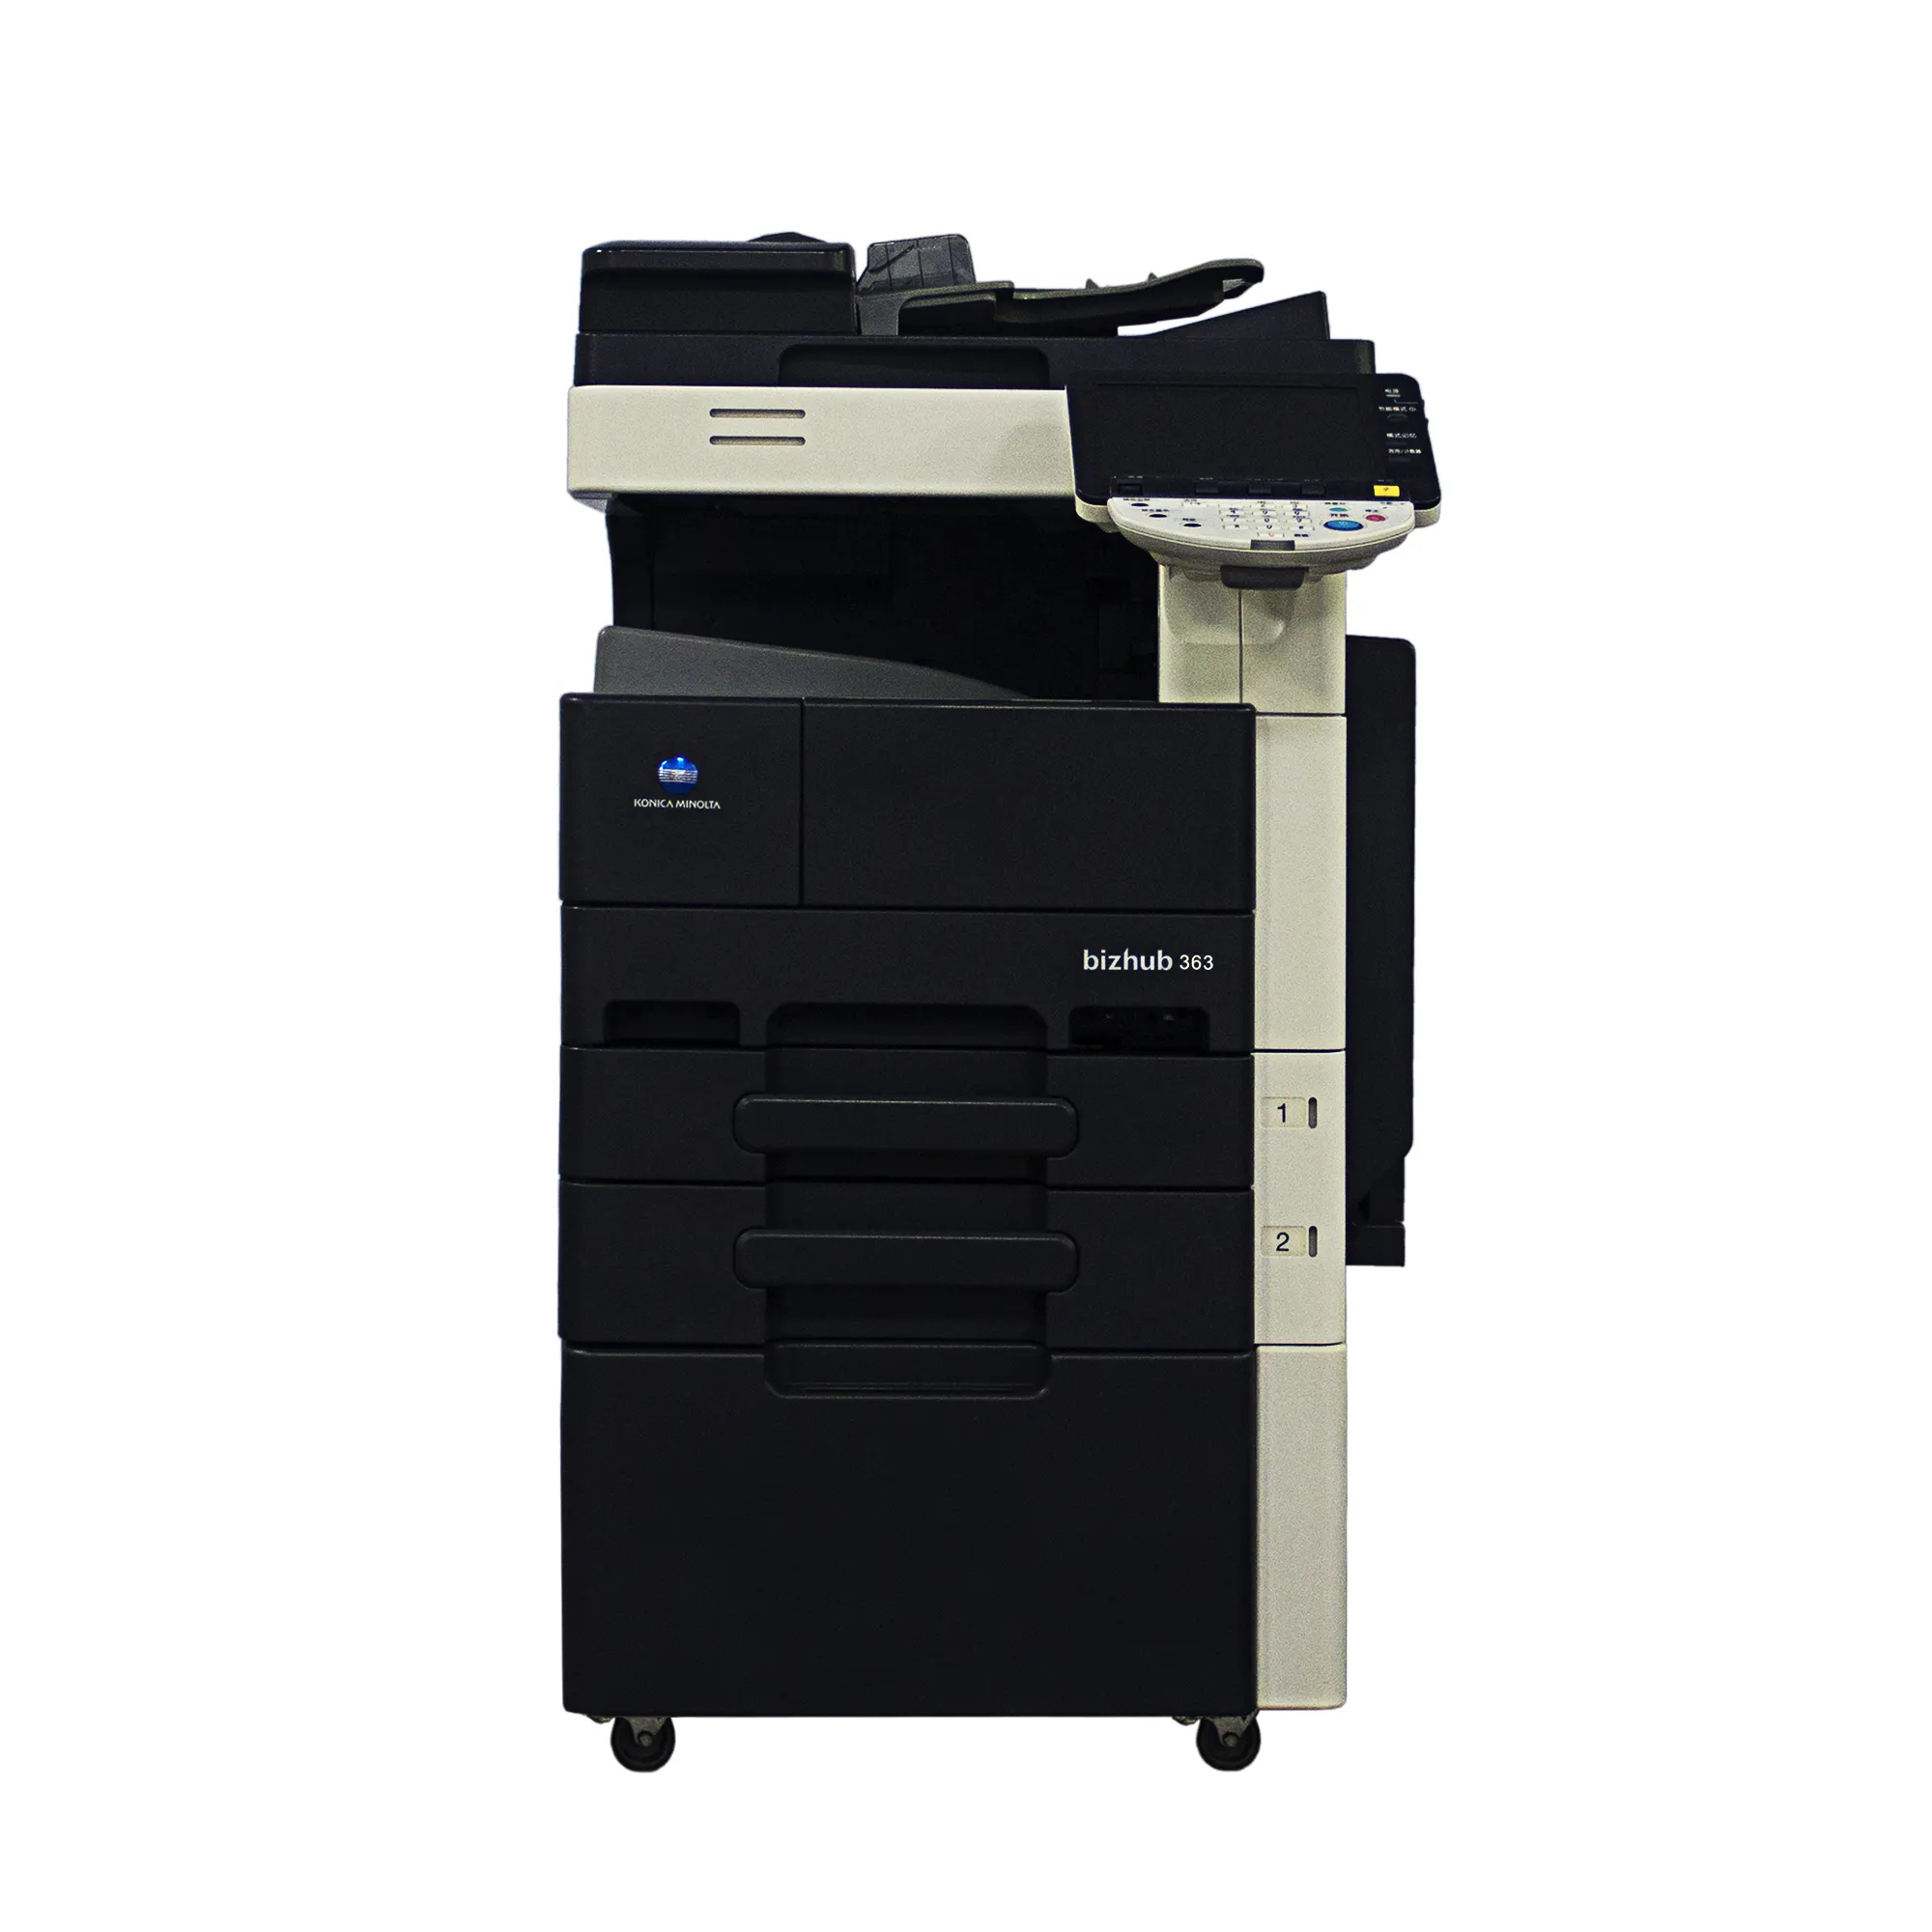 Hoge Kwaliteit Printers Kopieerapparaten Print Machine Voor Konica Minolta Bh363 Gebruikt Kopieerapparaat